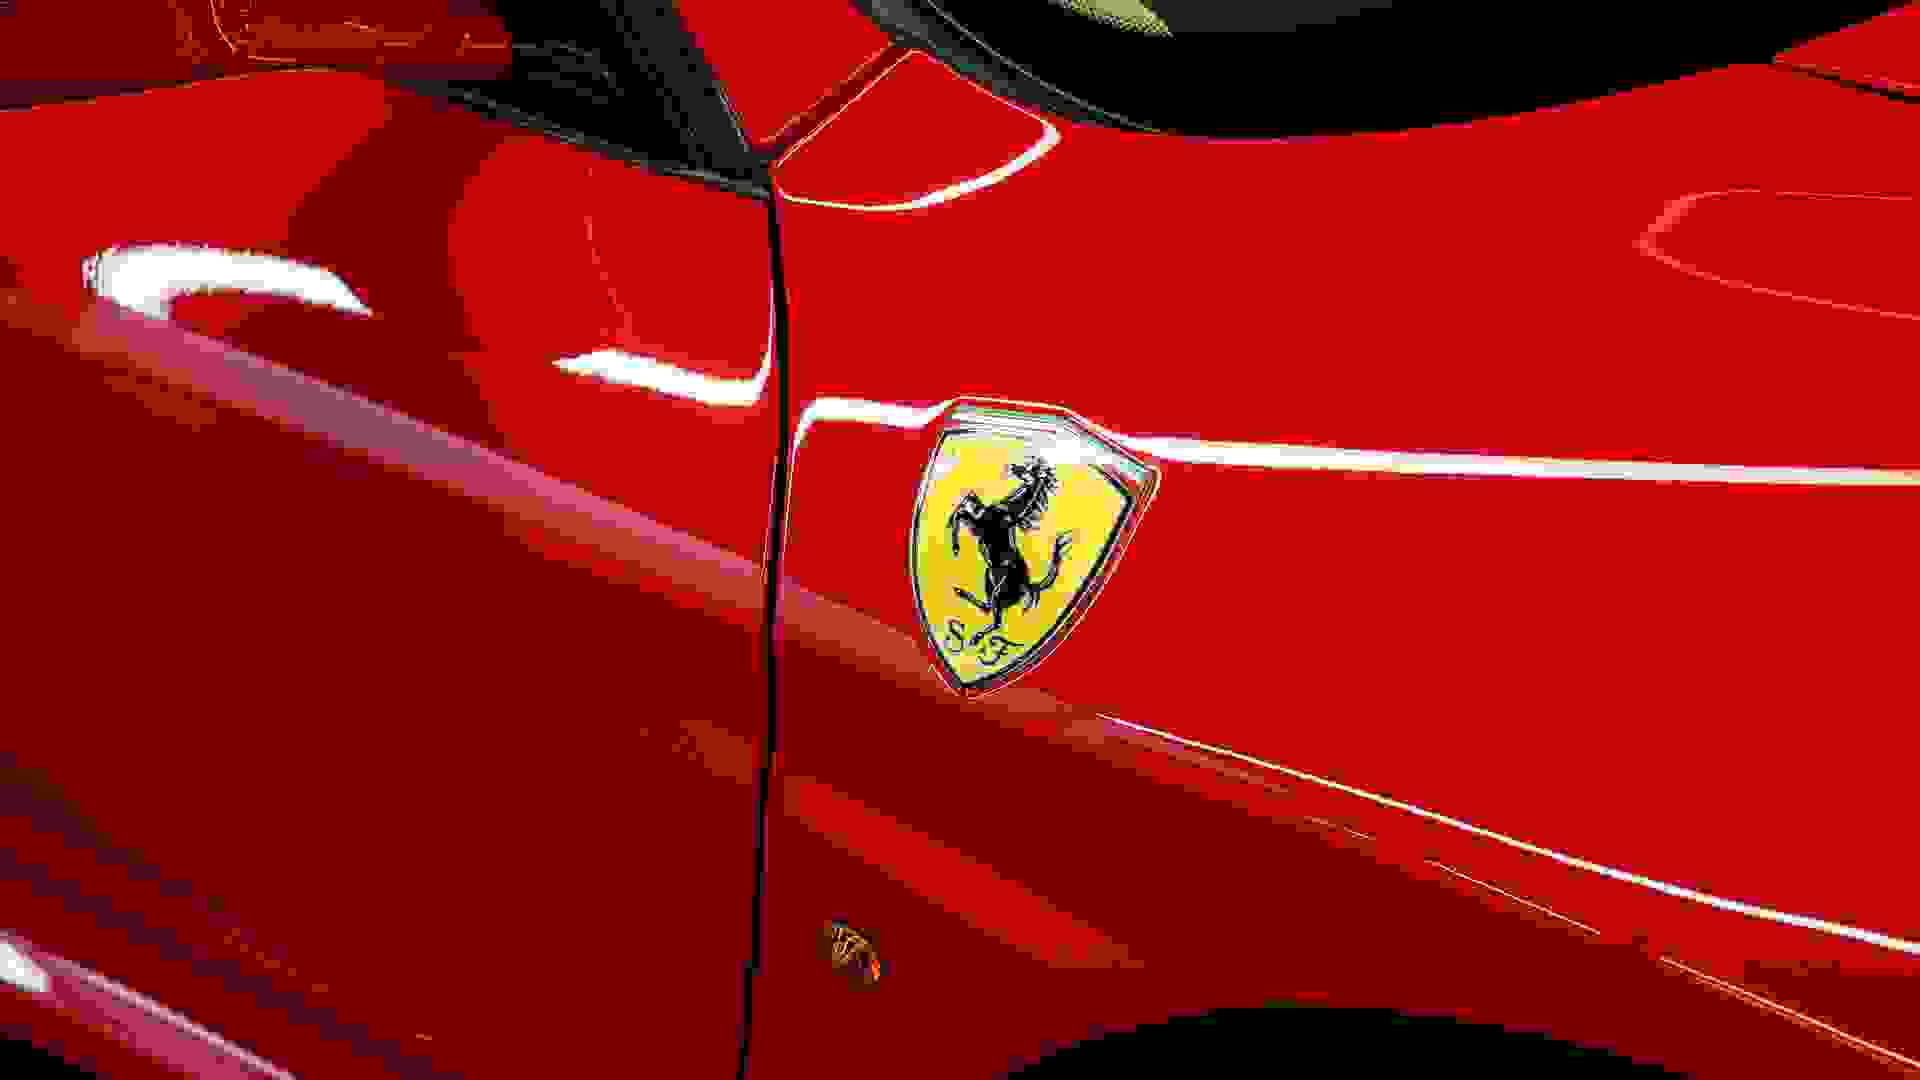 Ferrari F430 Photo 2b4f2019-ceb0-4a47-8045-7fd0d4e6bd31.jpg